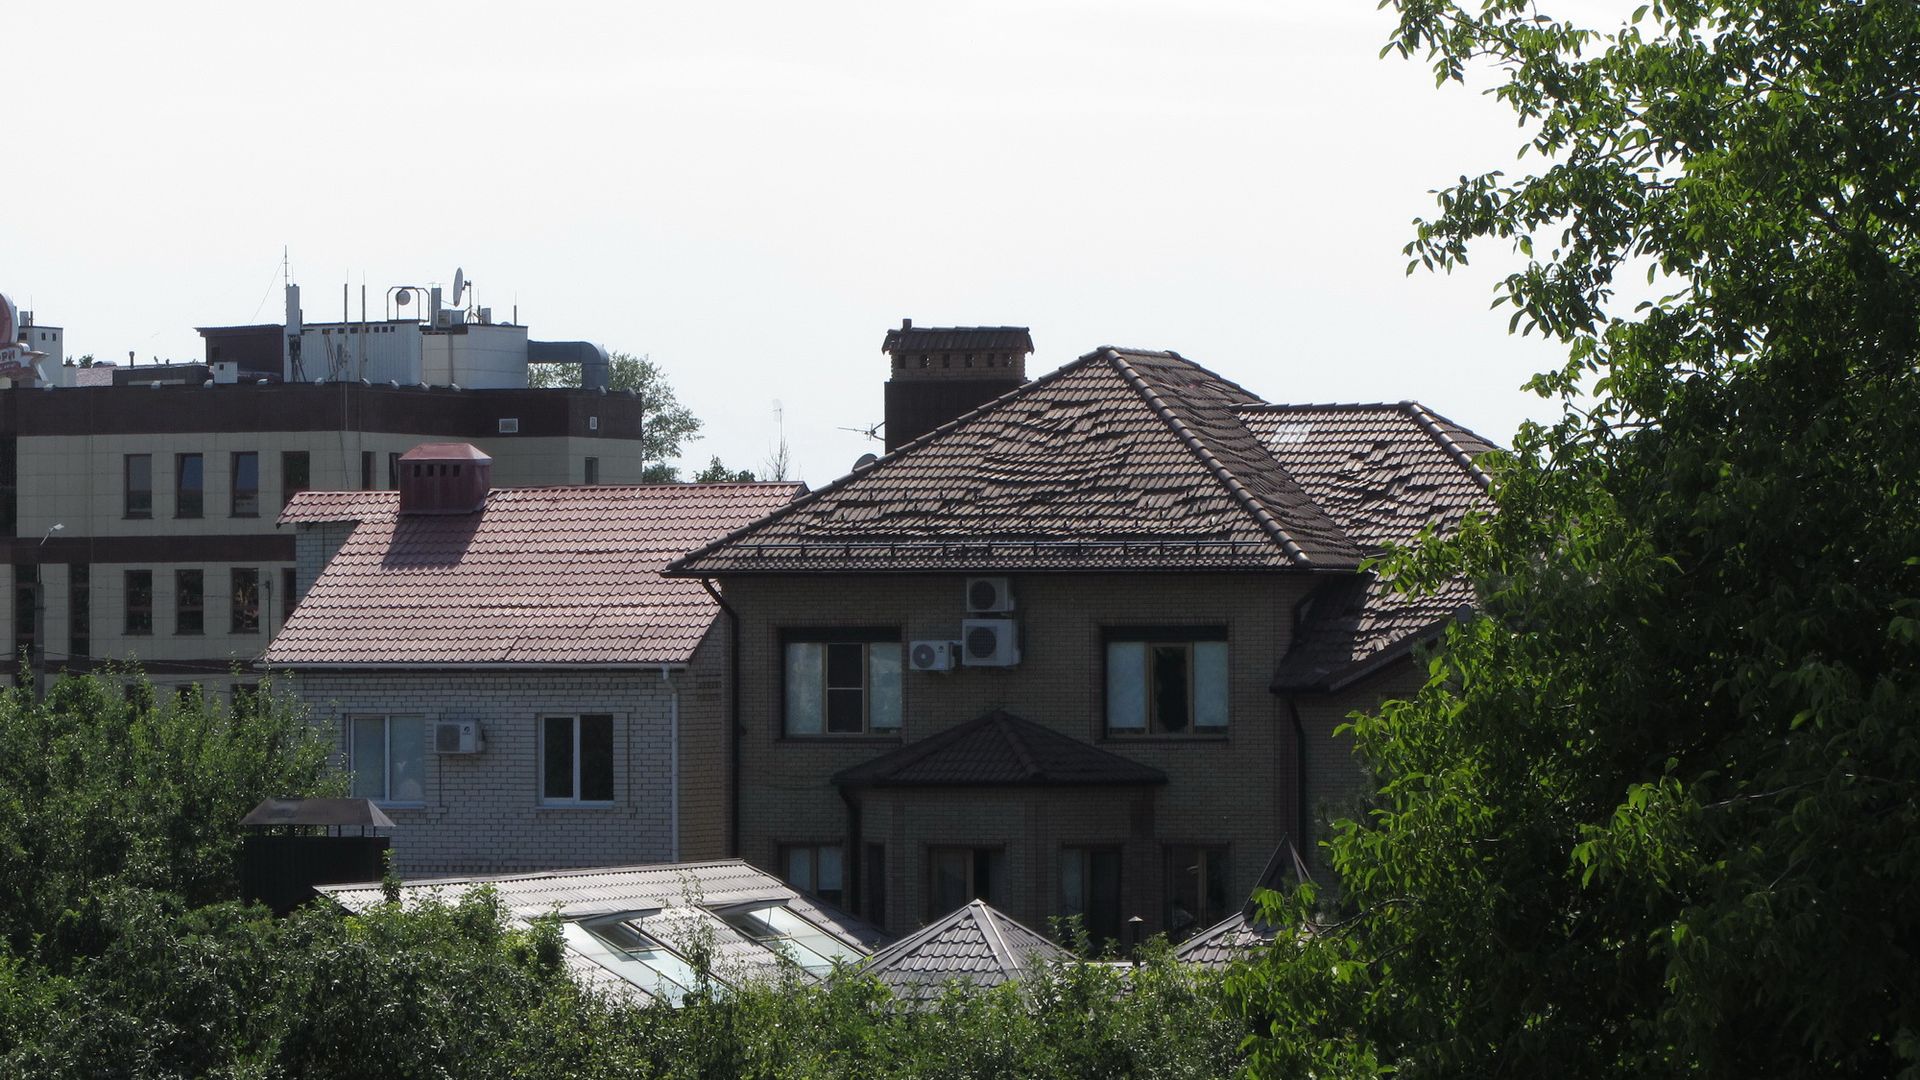 Повреждена крыша у частного дома. Белгород, 03.07.2022 г.